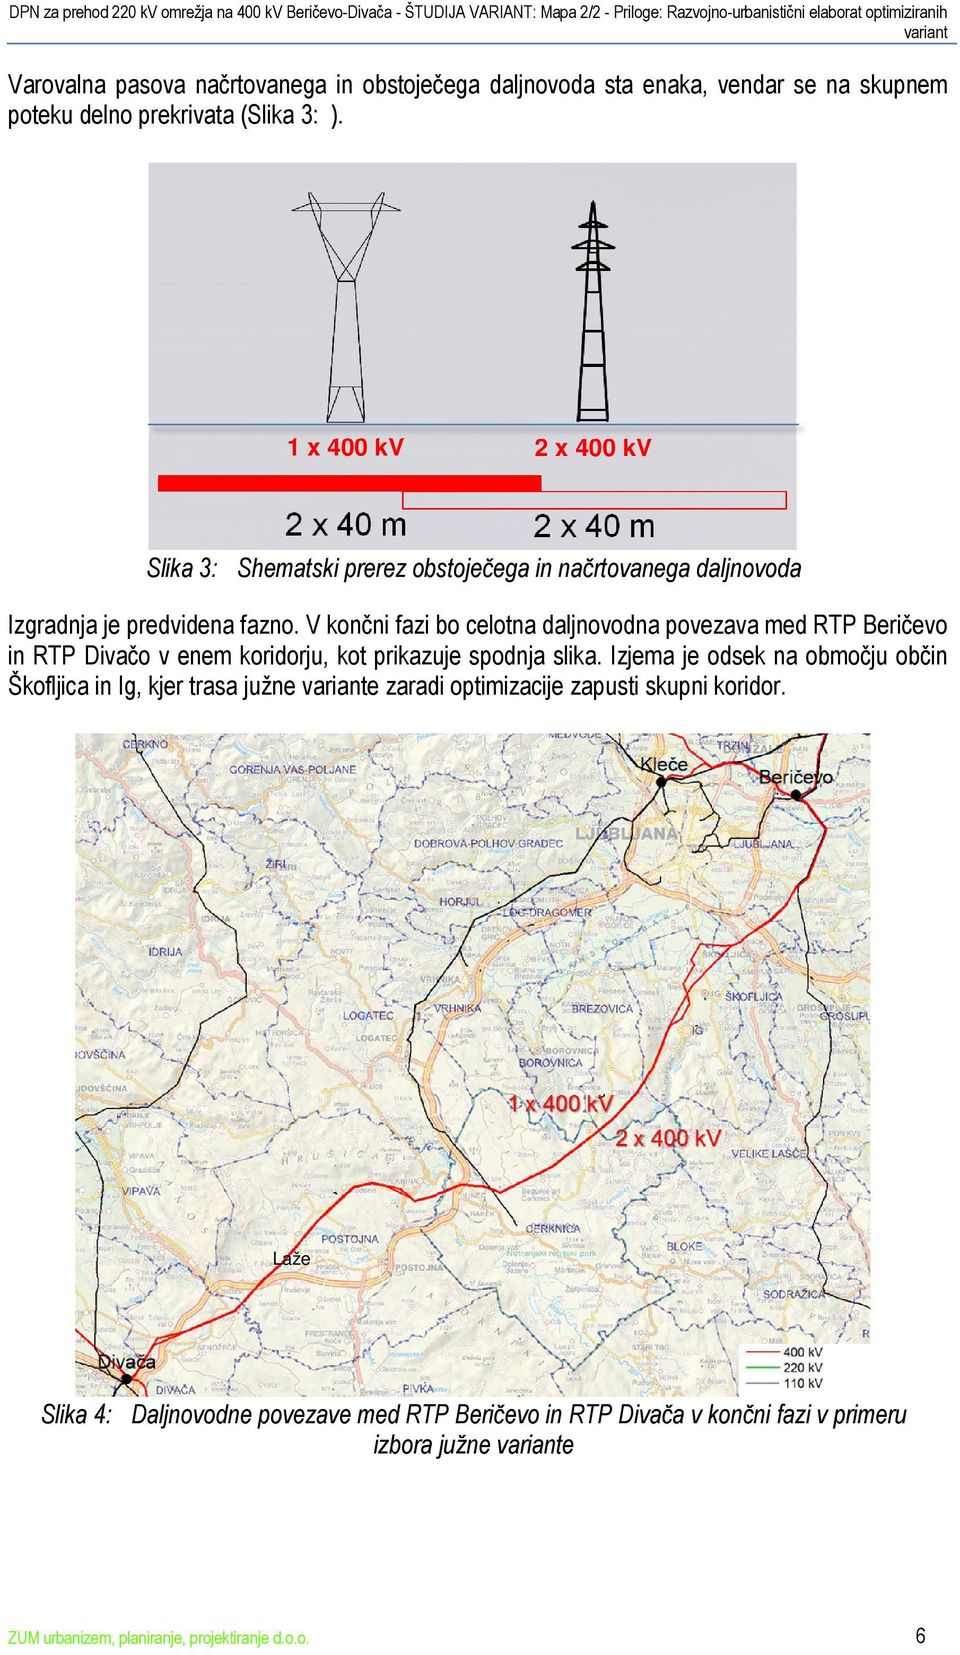 V končni fazi bo celotna daljnovodna povezava med RTP Beričevo in RTP Divačo v enem koridorju, kot prikazuje spodnja slika.